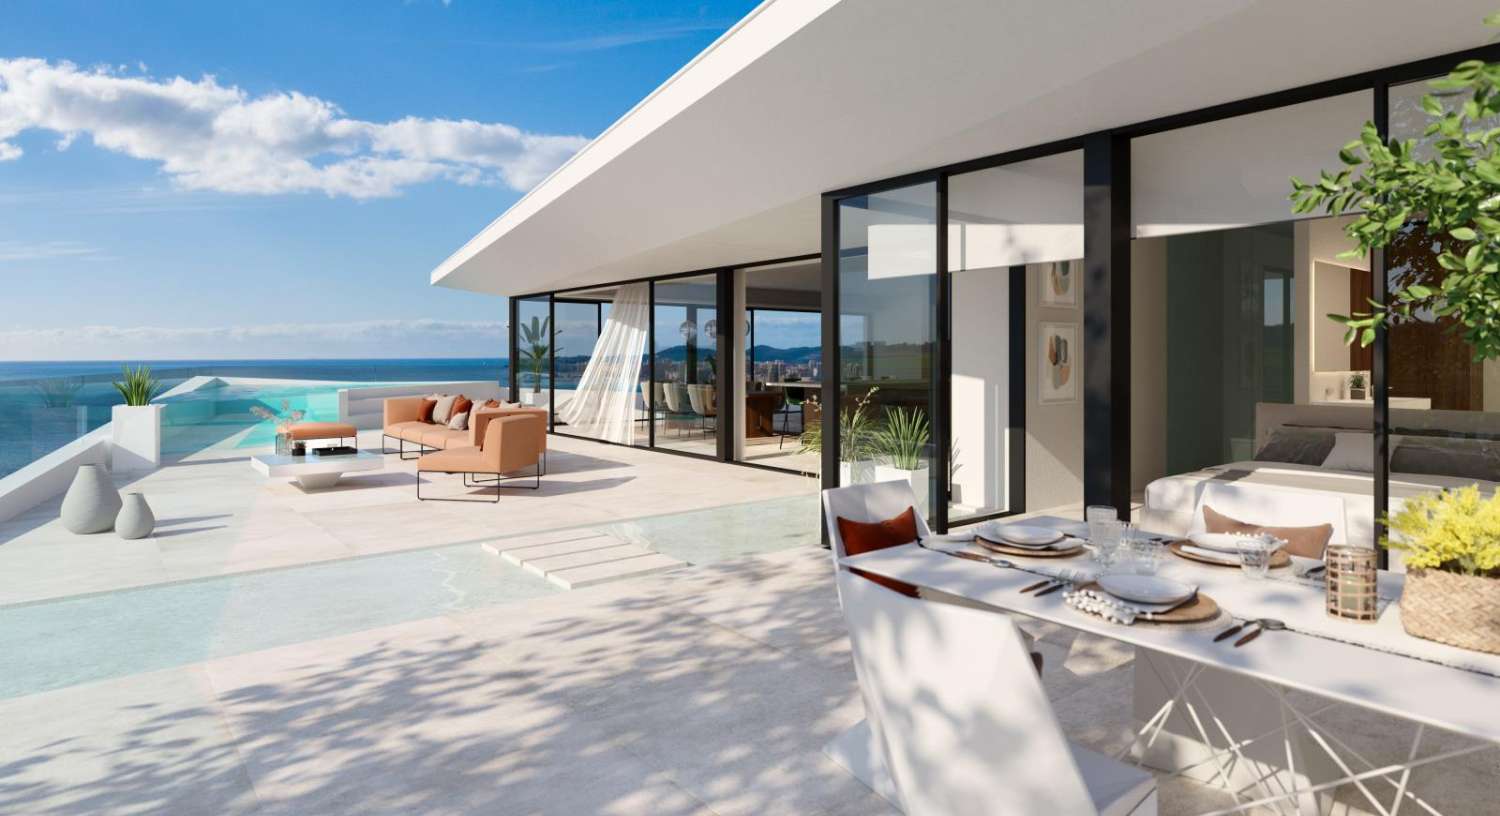 Exclusivos pisos de obra nueva con increíbles vistas al mar!